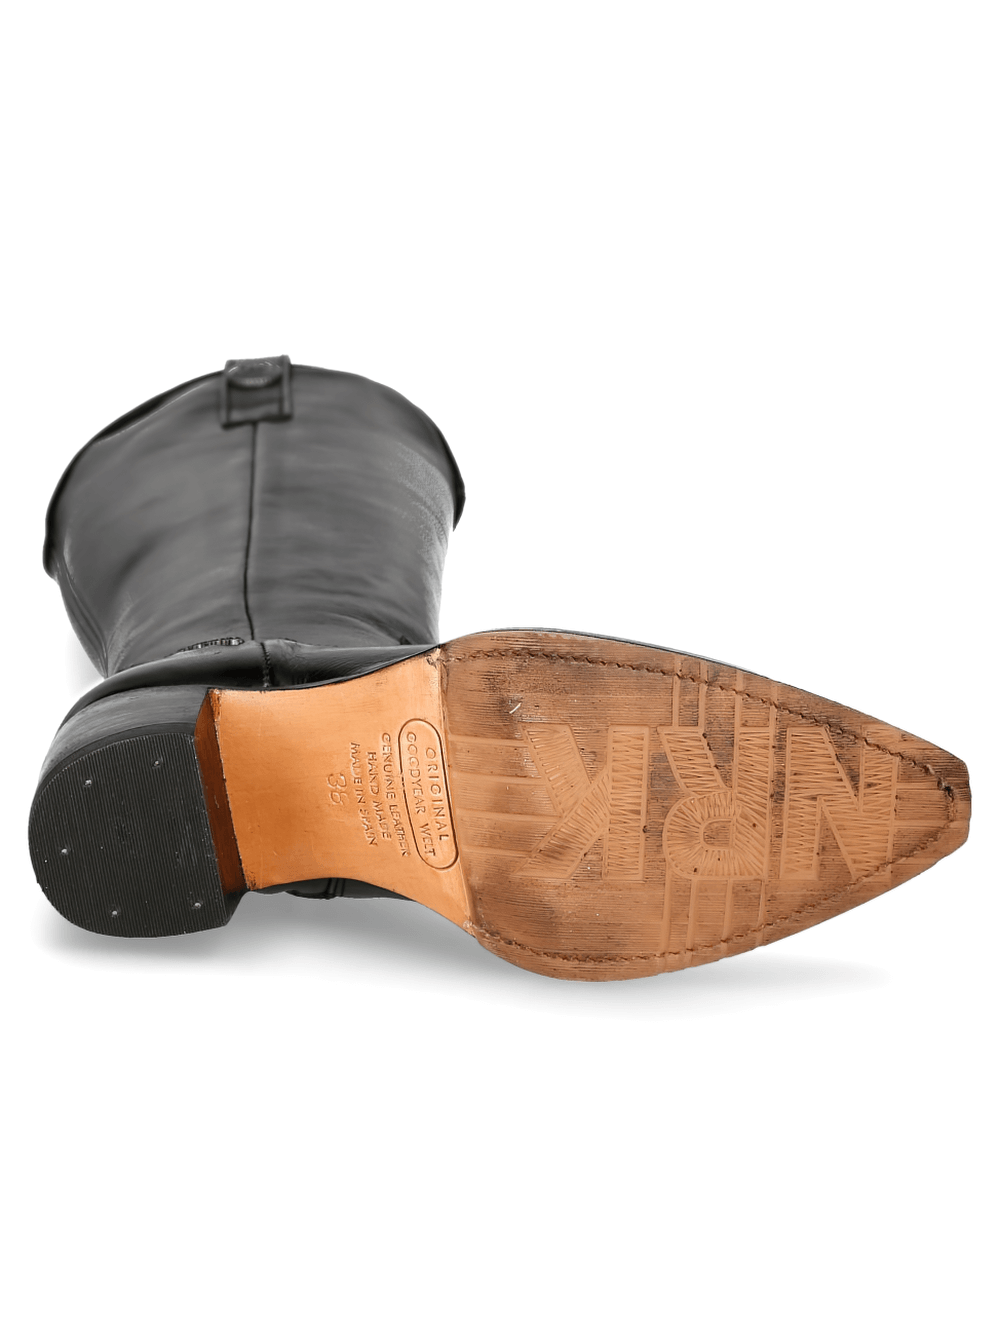 NEW ROCK Black Goodyear-Welt High Boots with Zipper